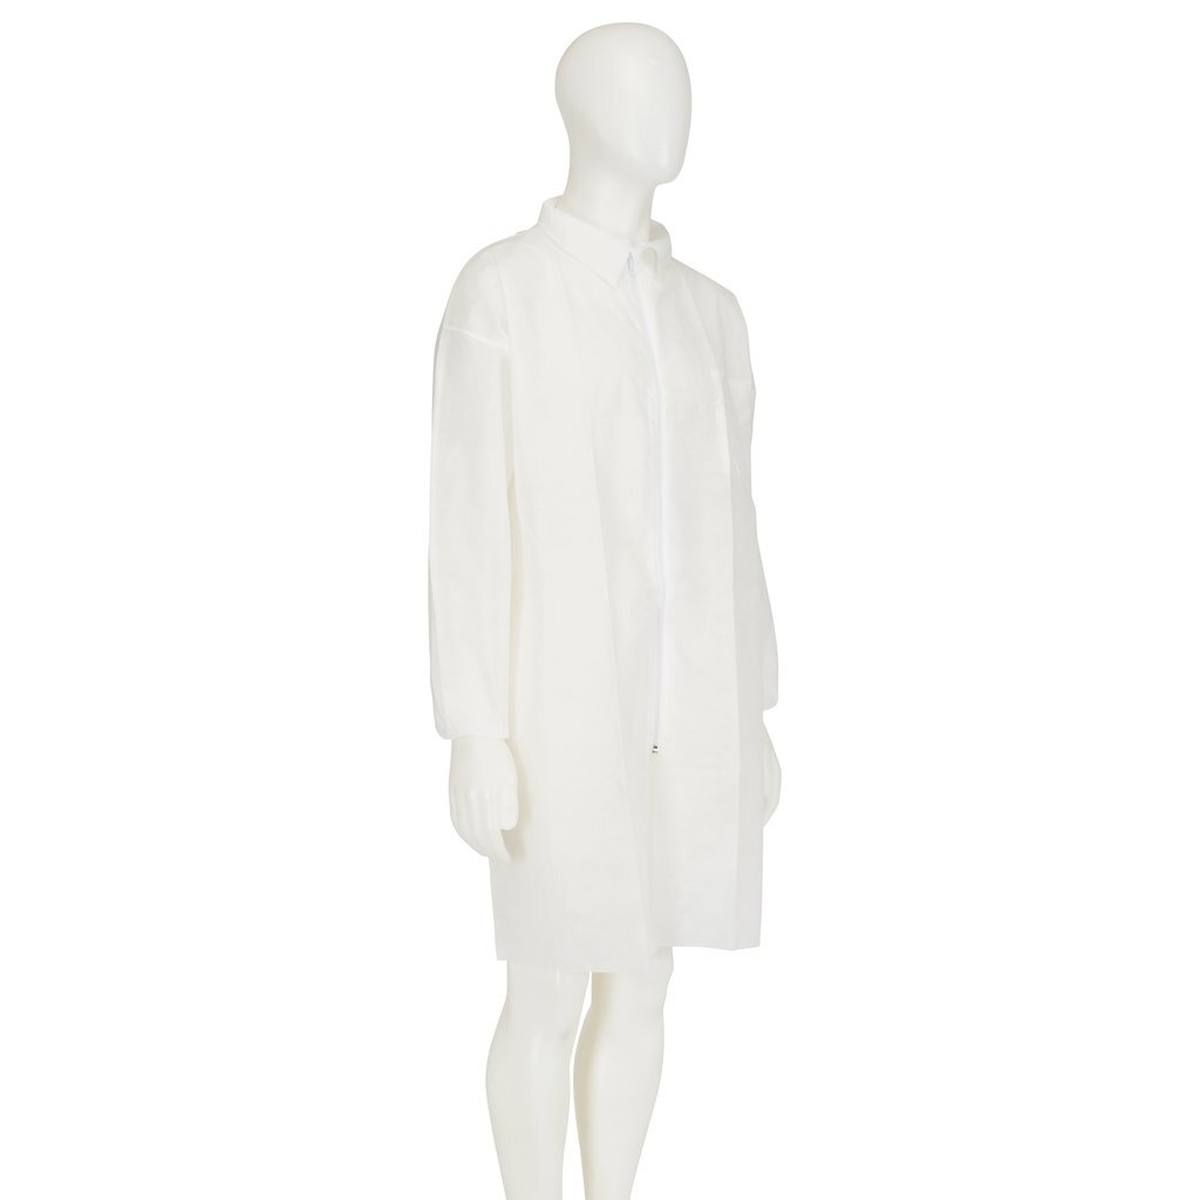 3M 4400 Manteau, blanc, taille L, matériel 100% polypropylène, respirant, très léger, avec fermeture éclair